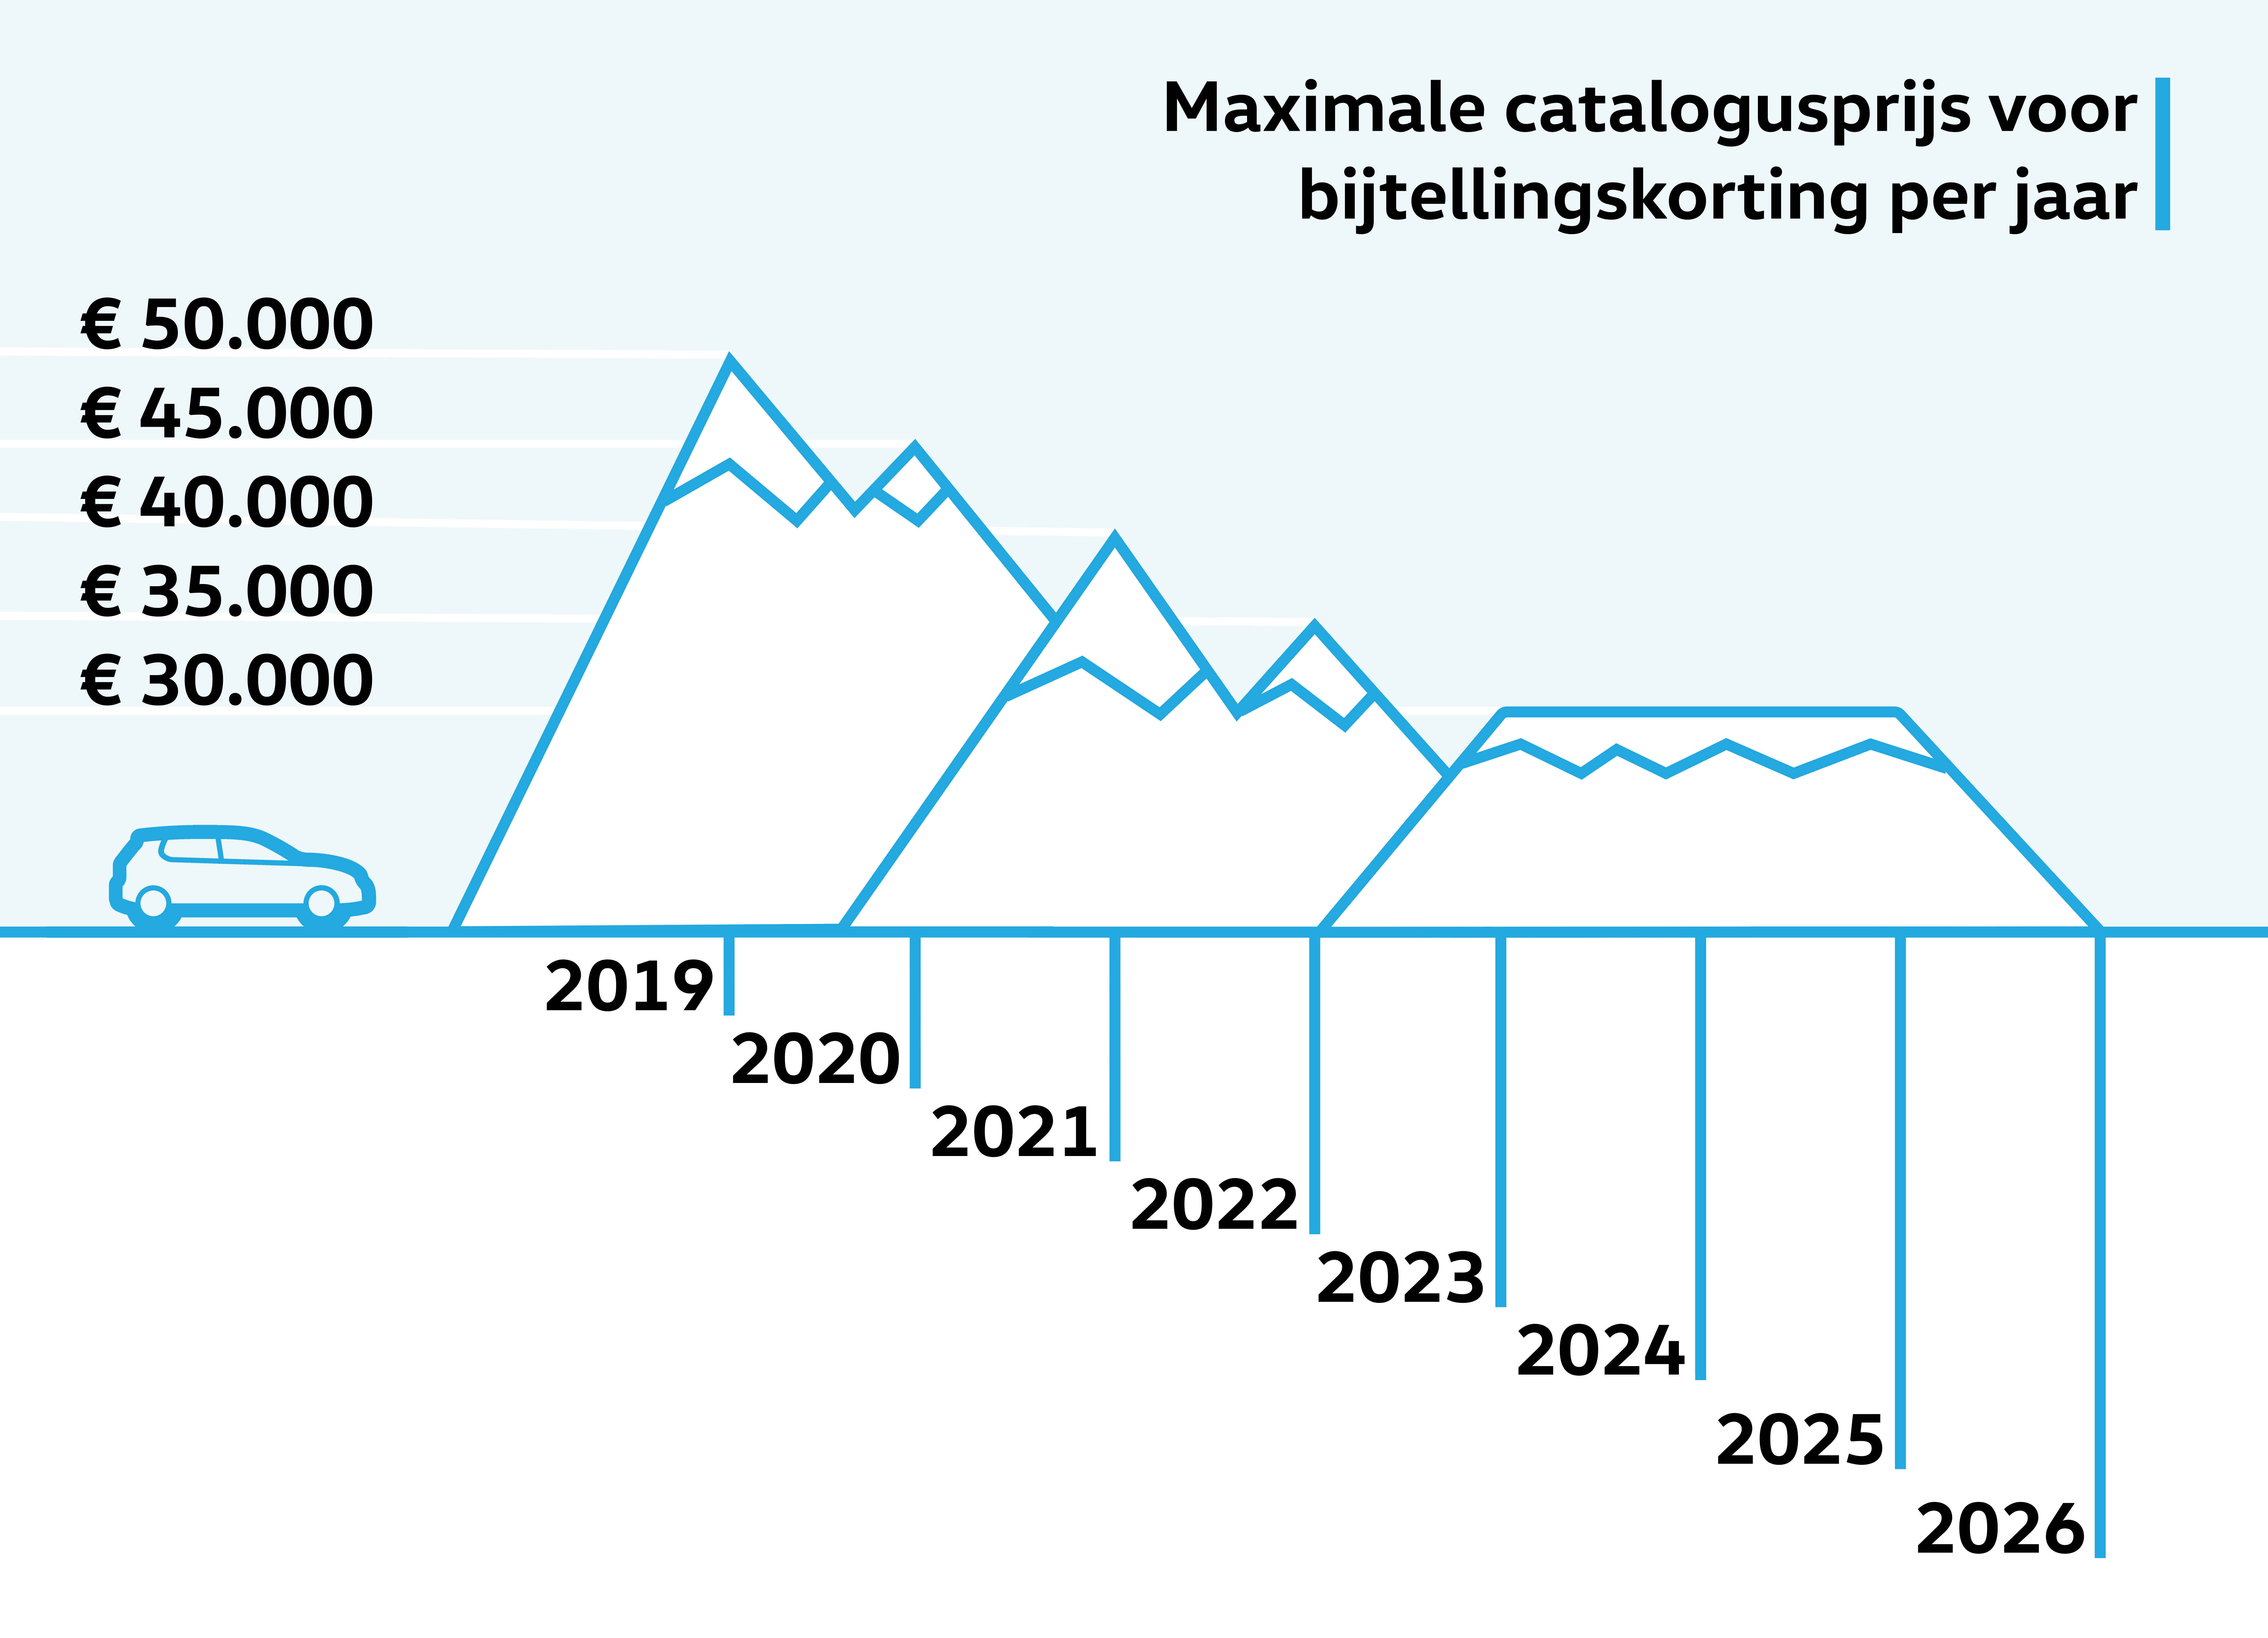 Elektrisch rijden in de toekomst volgens het Klimaatakkoord weergegeven door een grafiek waarin de daling van de maximale catalogusprijs voor bijtellingsvoordeel te zien is